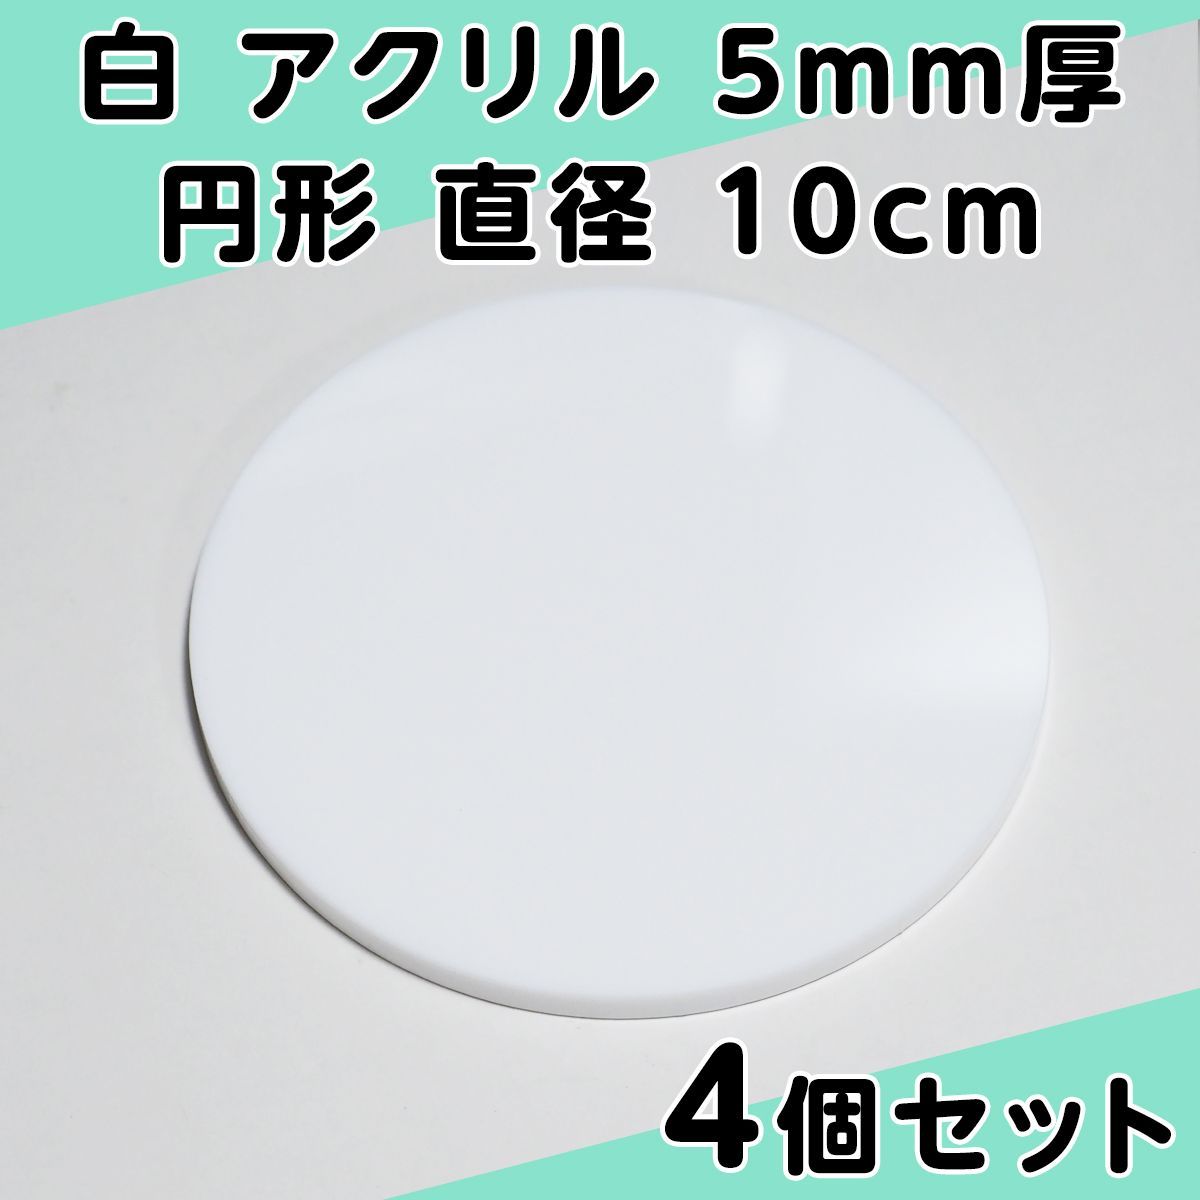 白 アクリル 5mm厚 円形 直径10cm 4個セット - メルカリ